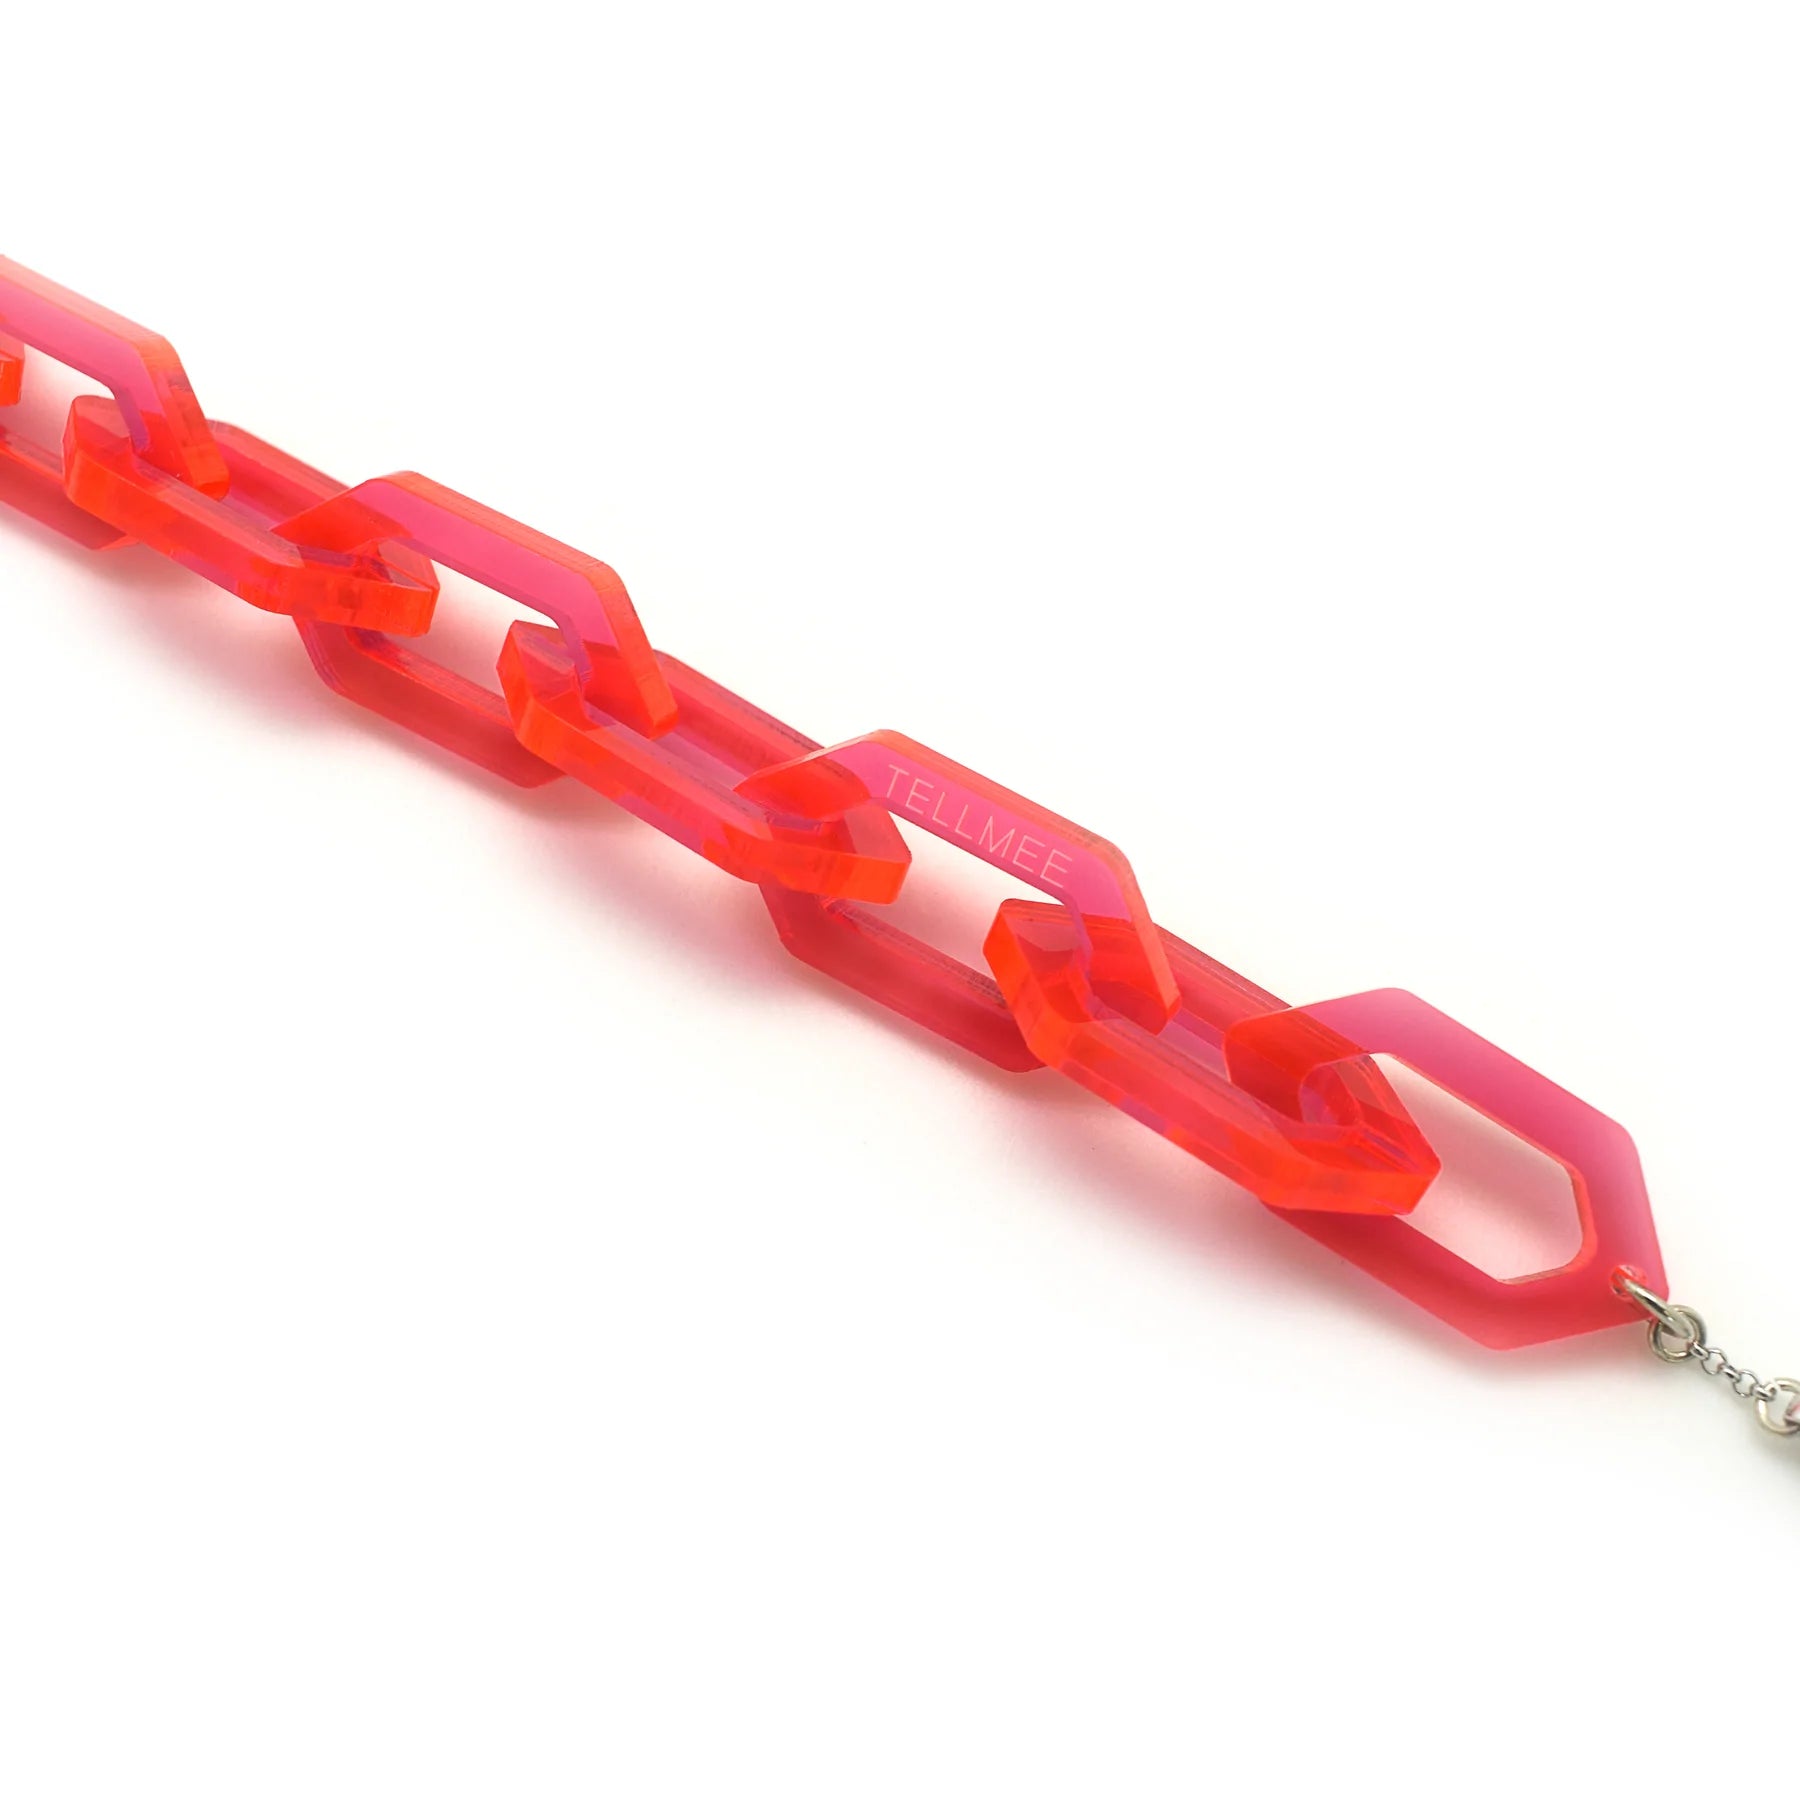 TELLMEE - LINK - Bracelet